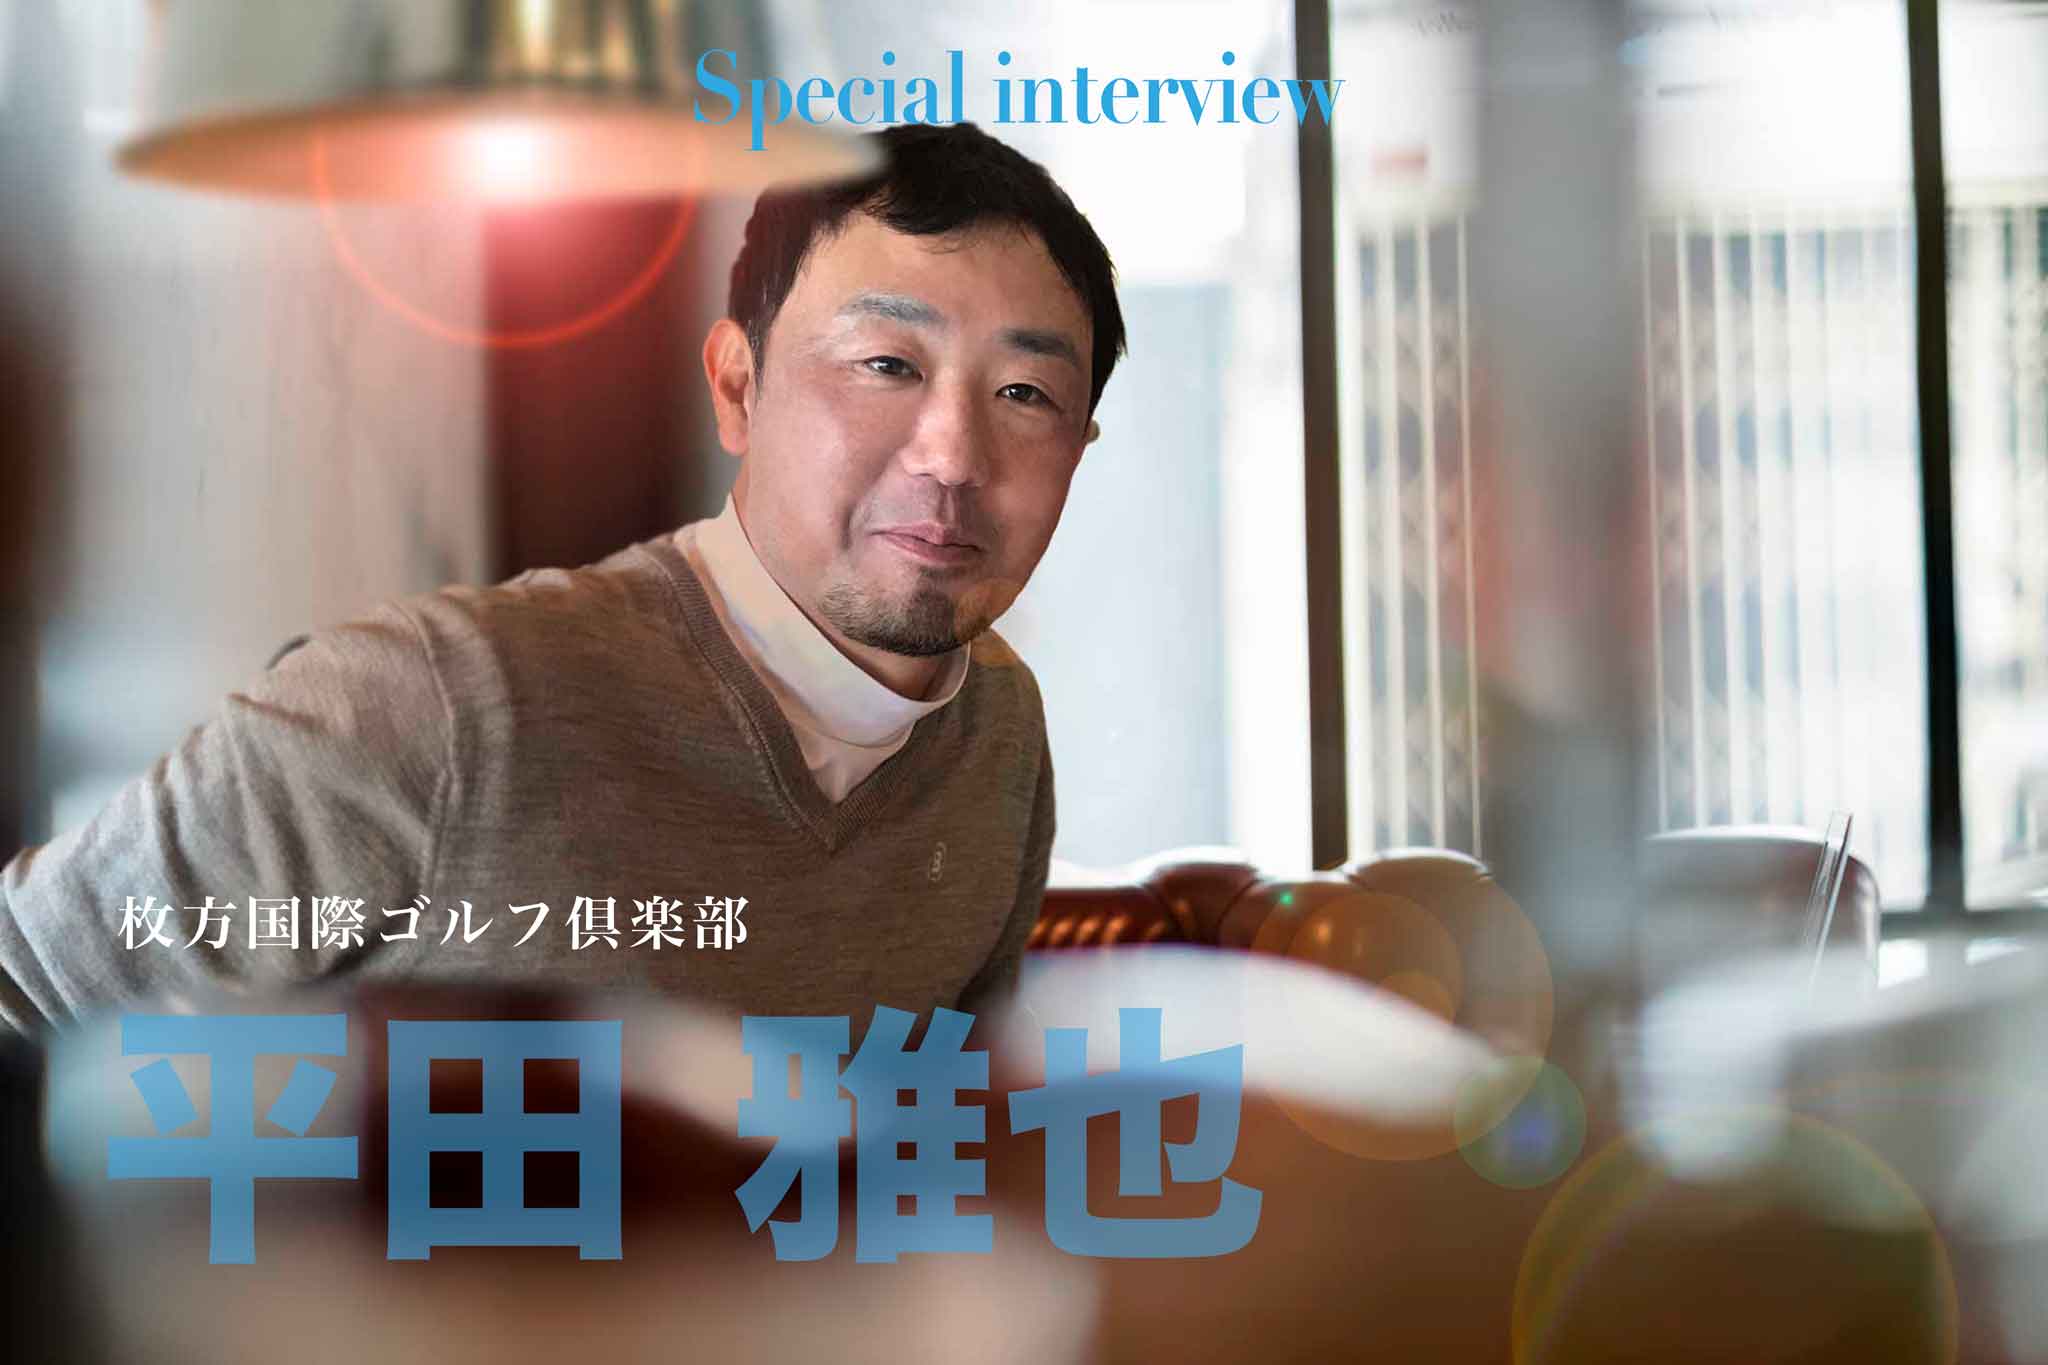 関西ゴルフサークル セブンエイトのクラチャンインタビューページtuwamono平田雅也さんの扉